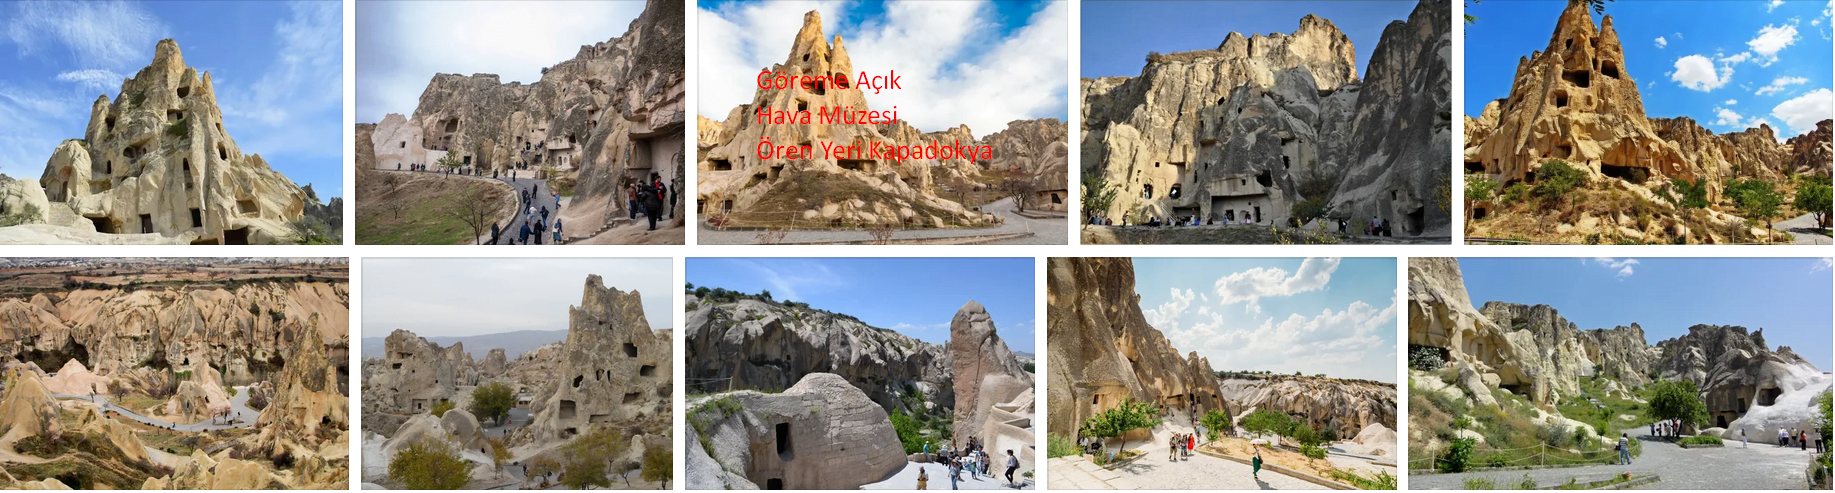 Kapadokya Göreme Açık Hava Müzesi